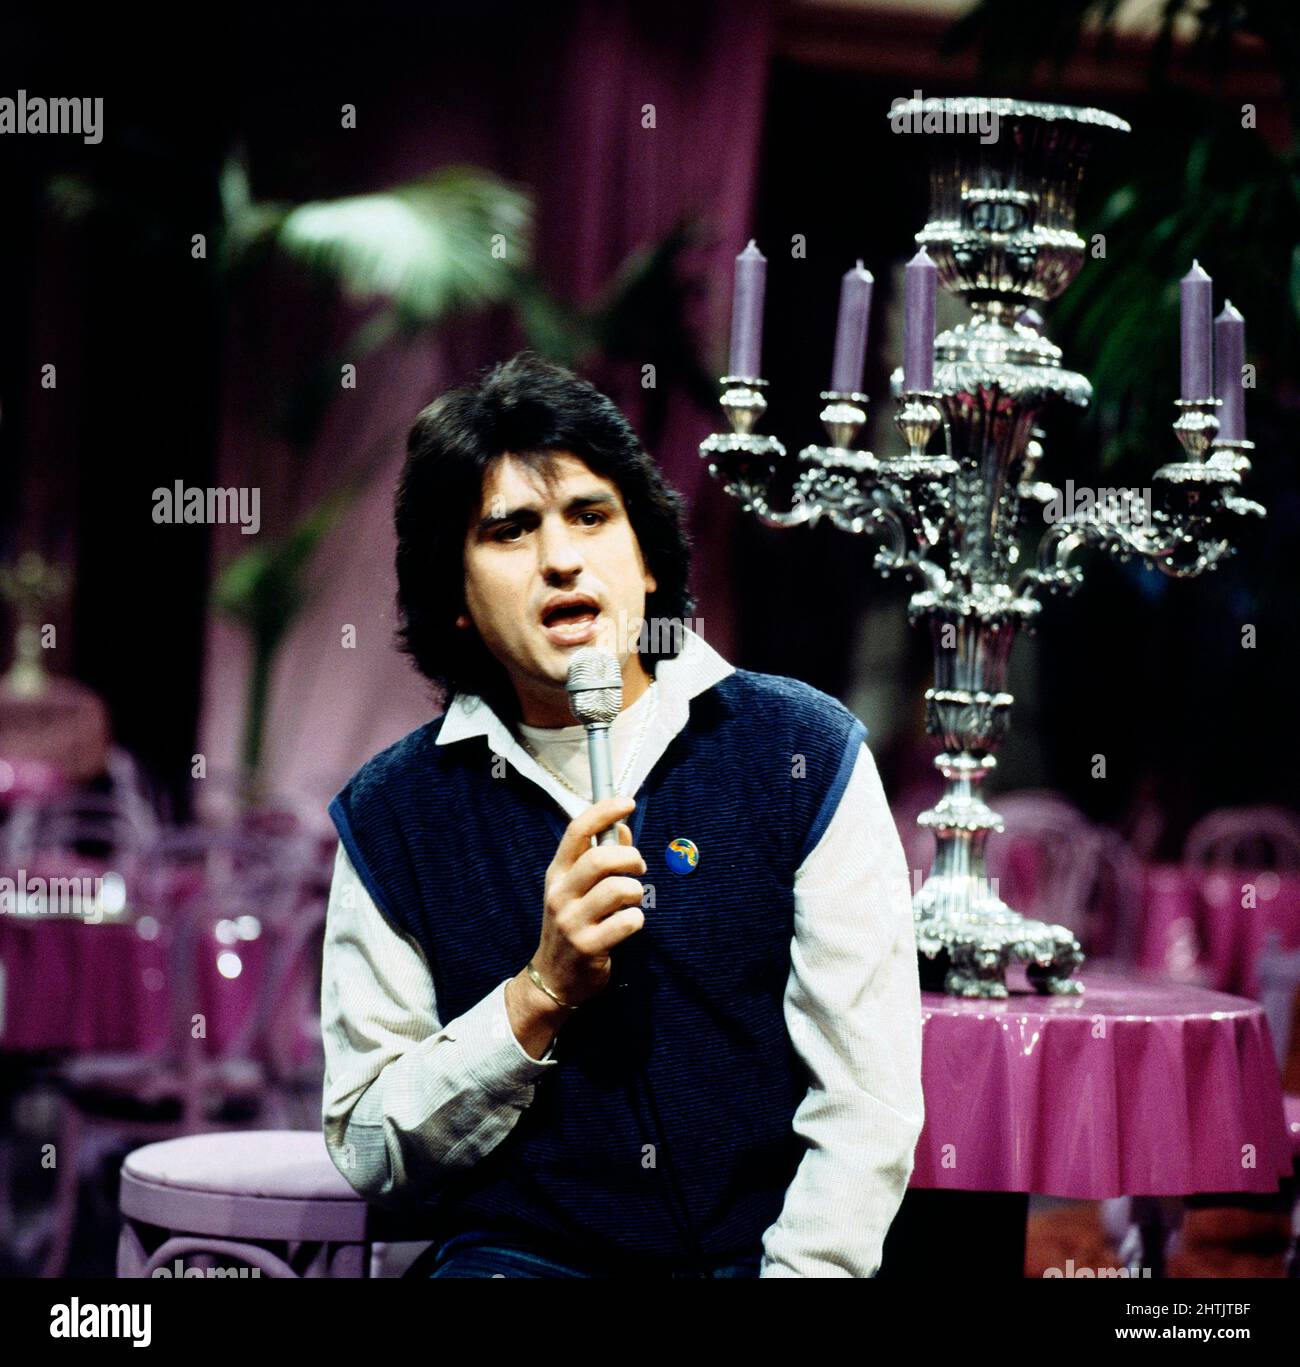 Toto Cutugno, italienischer Sänger und Songschreiber, singt bei einem Auftritt in der Show 'Buona Sera, Italia', Deutschland 1984. Stock Photo